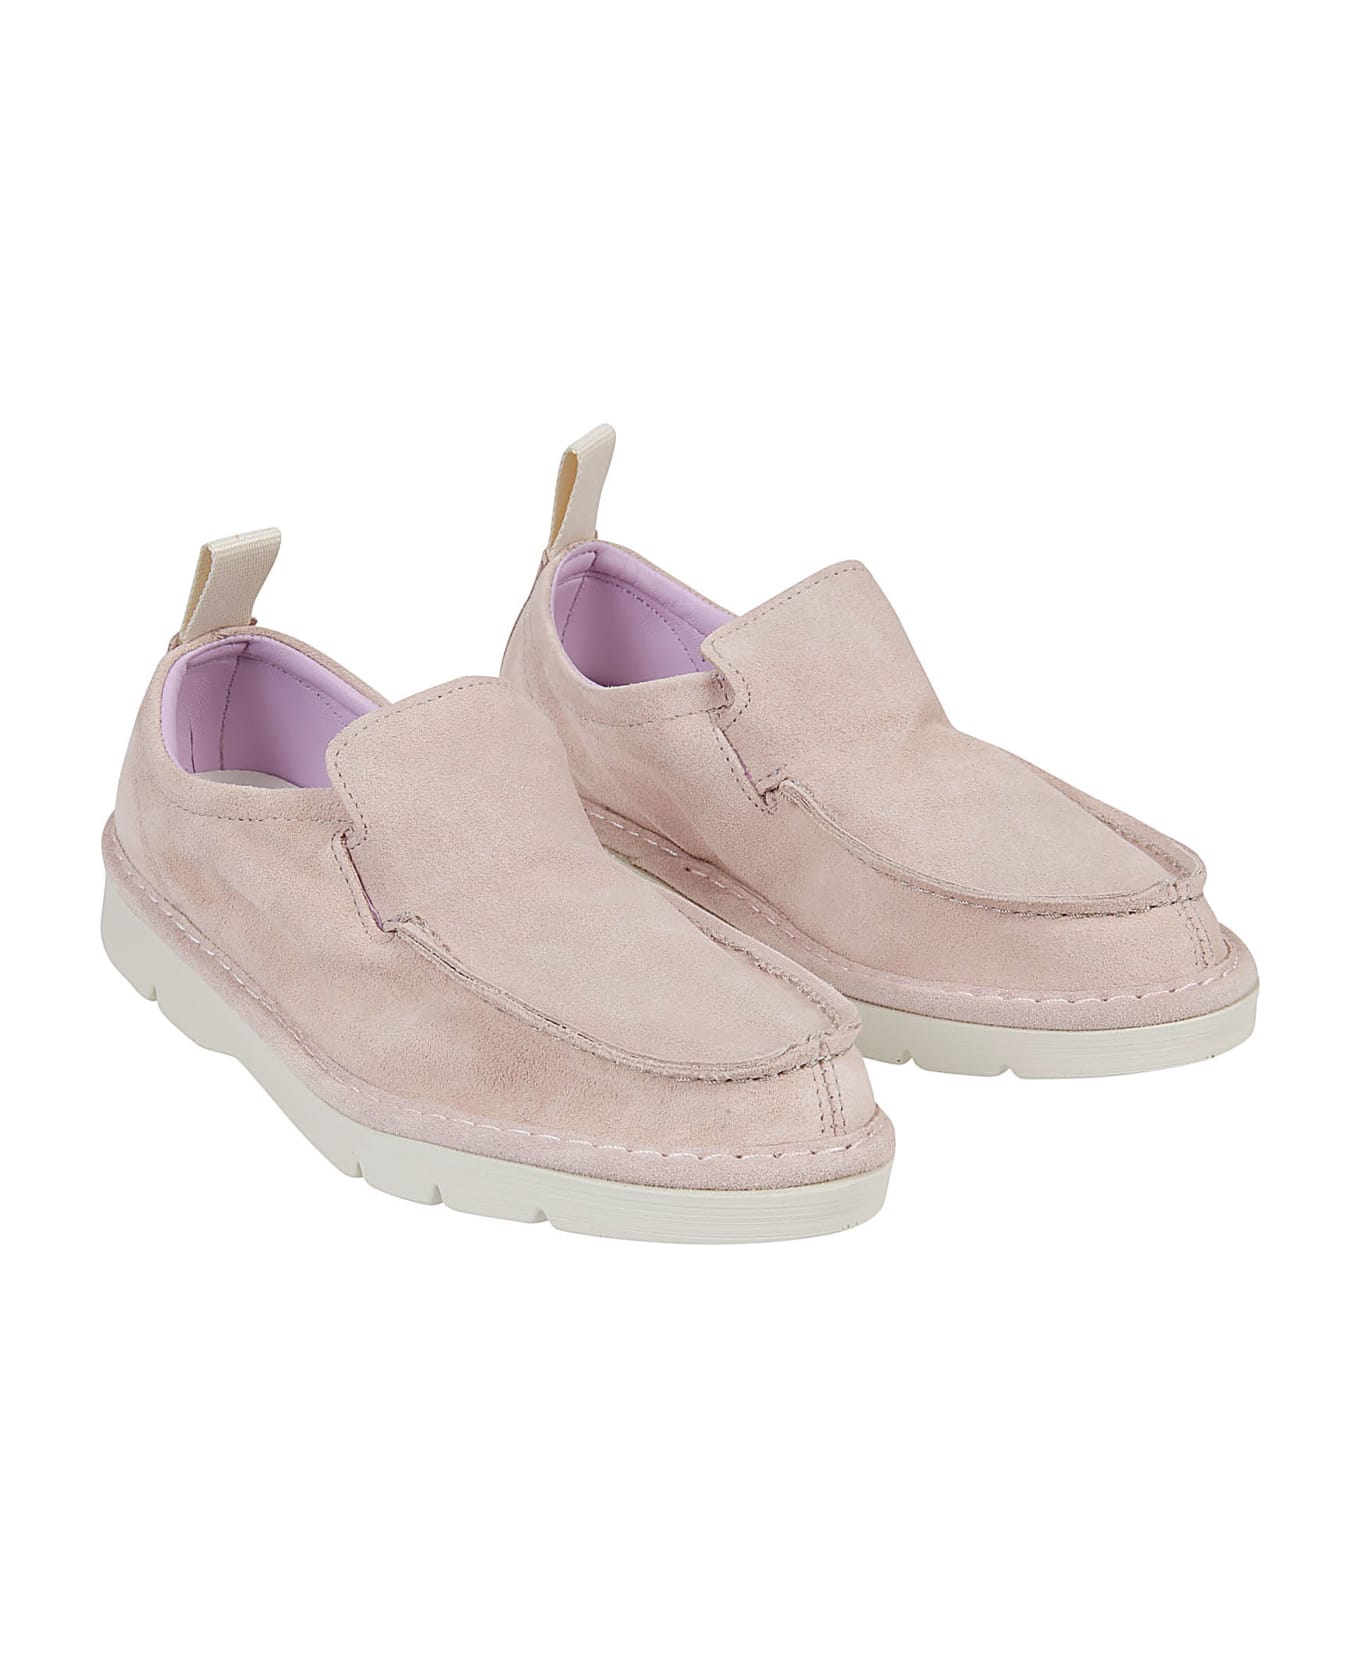 Panchic Flat Shoes Pink - Pink フラットシューズ